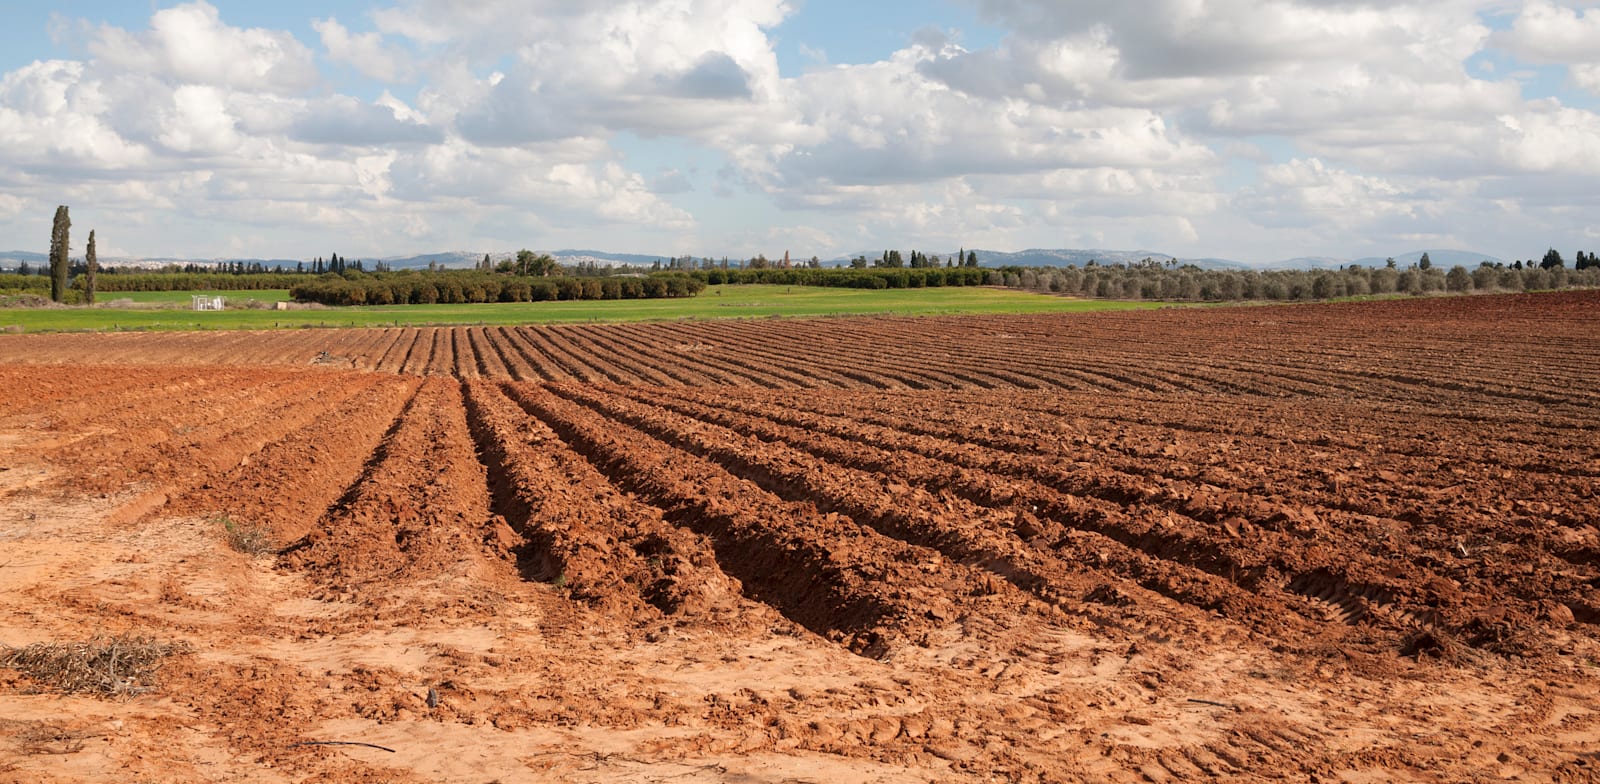 קרקע חקלאית / צילום: Shutterstock, pokku